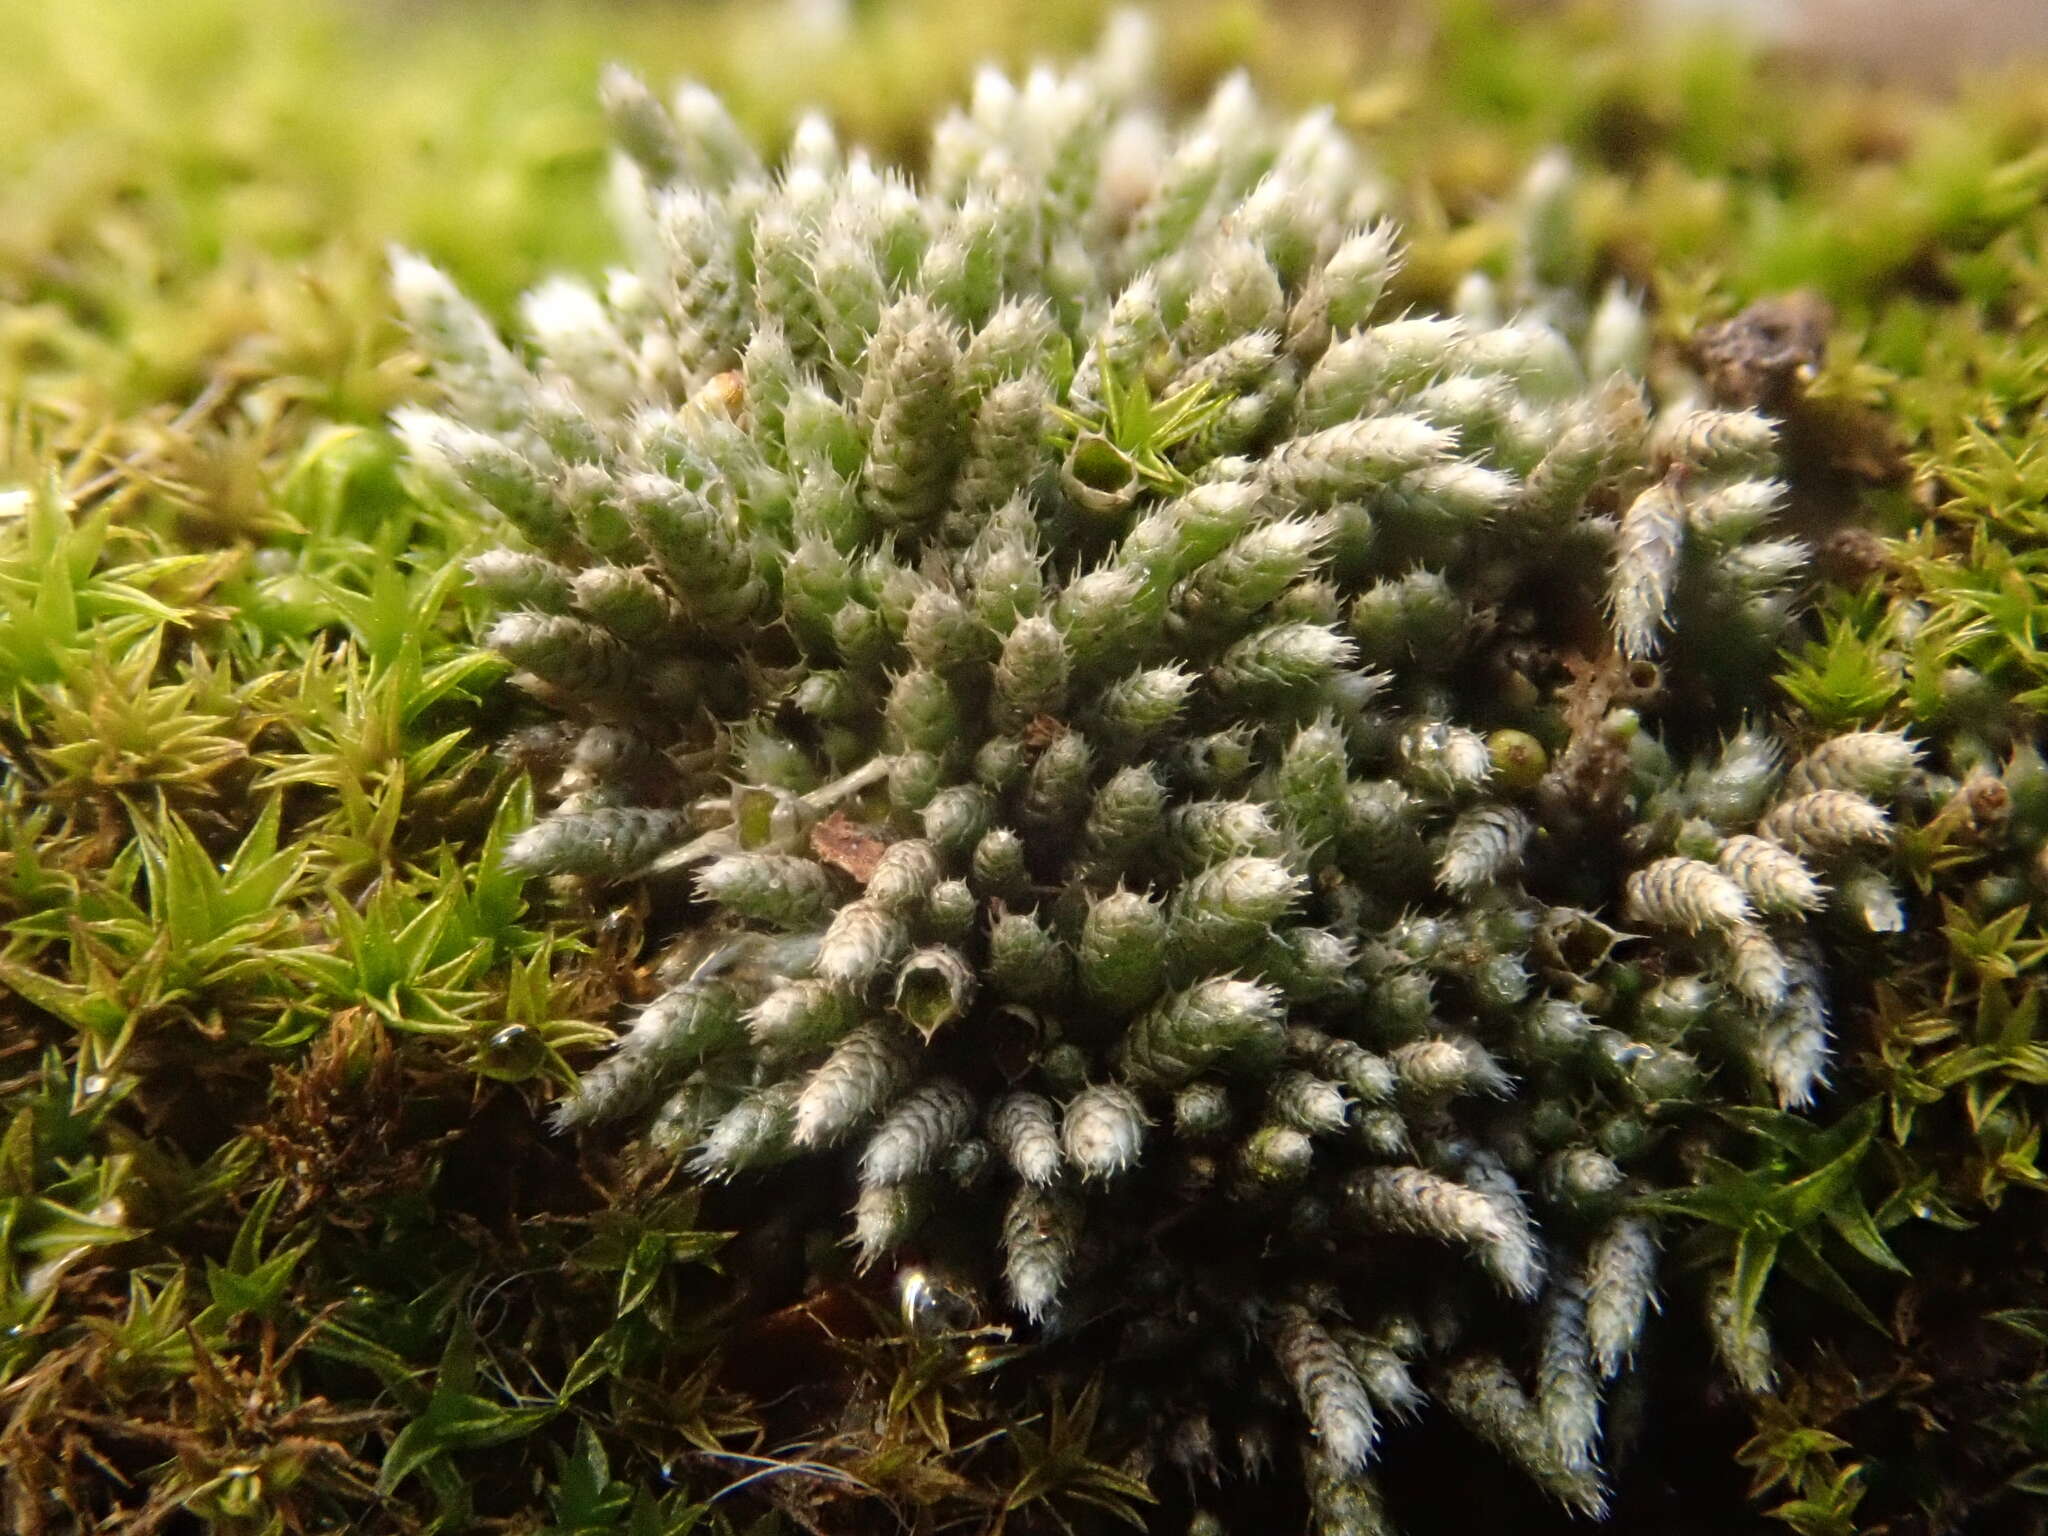 Image of silvergreen bryum moss